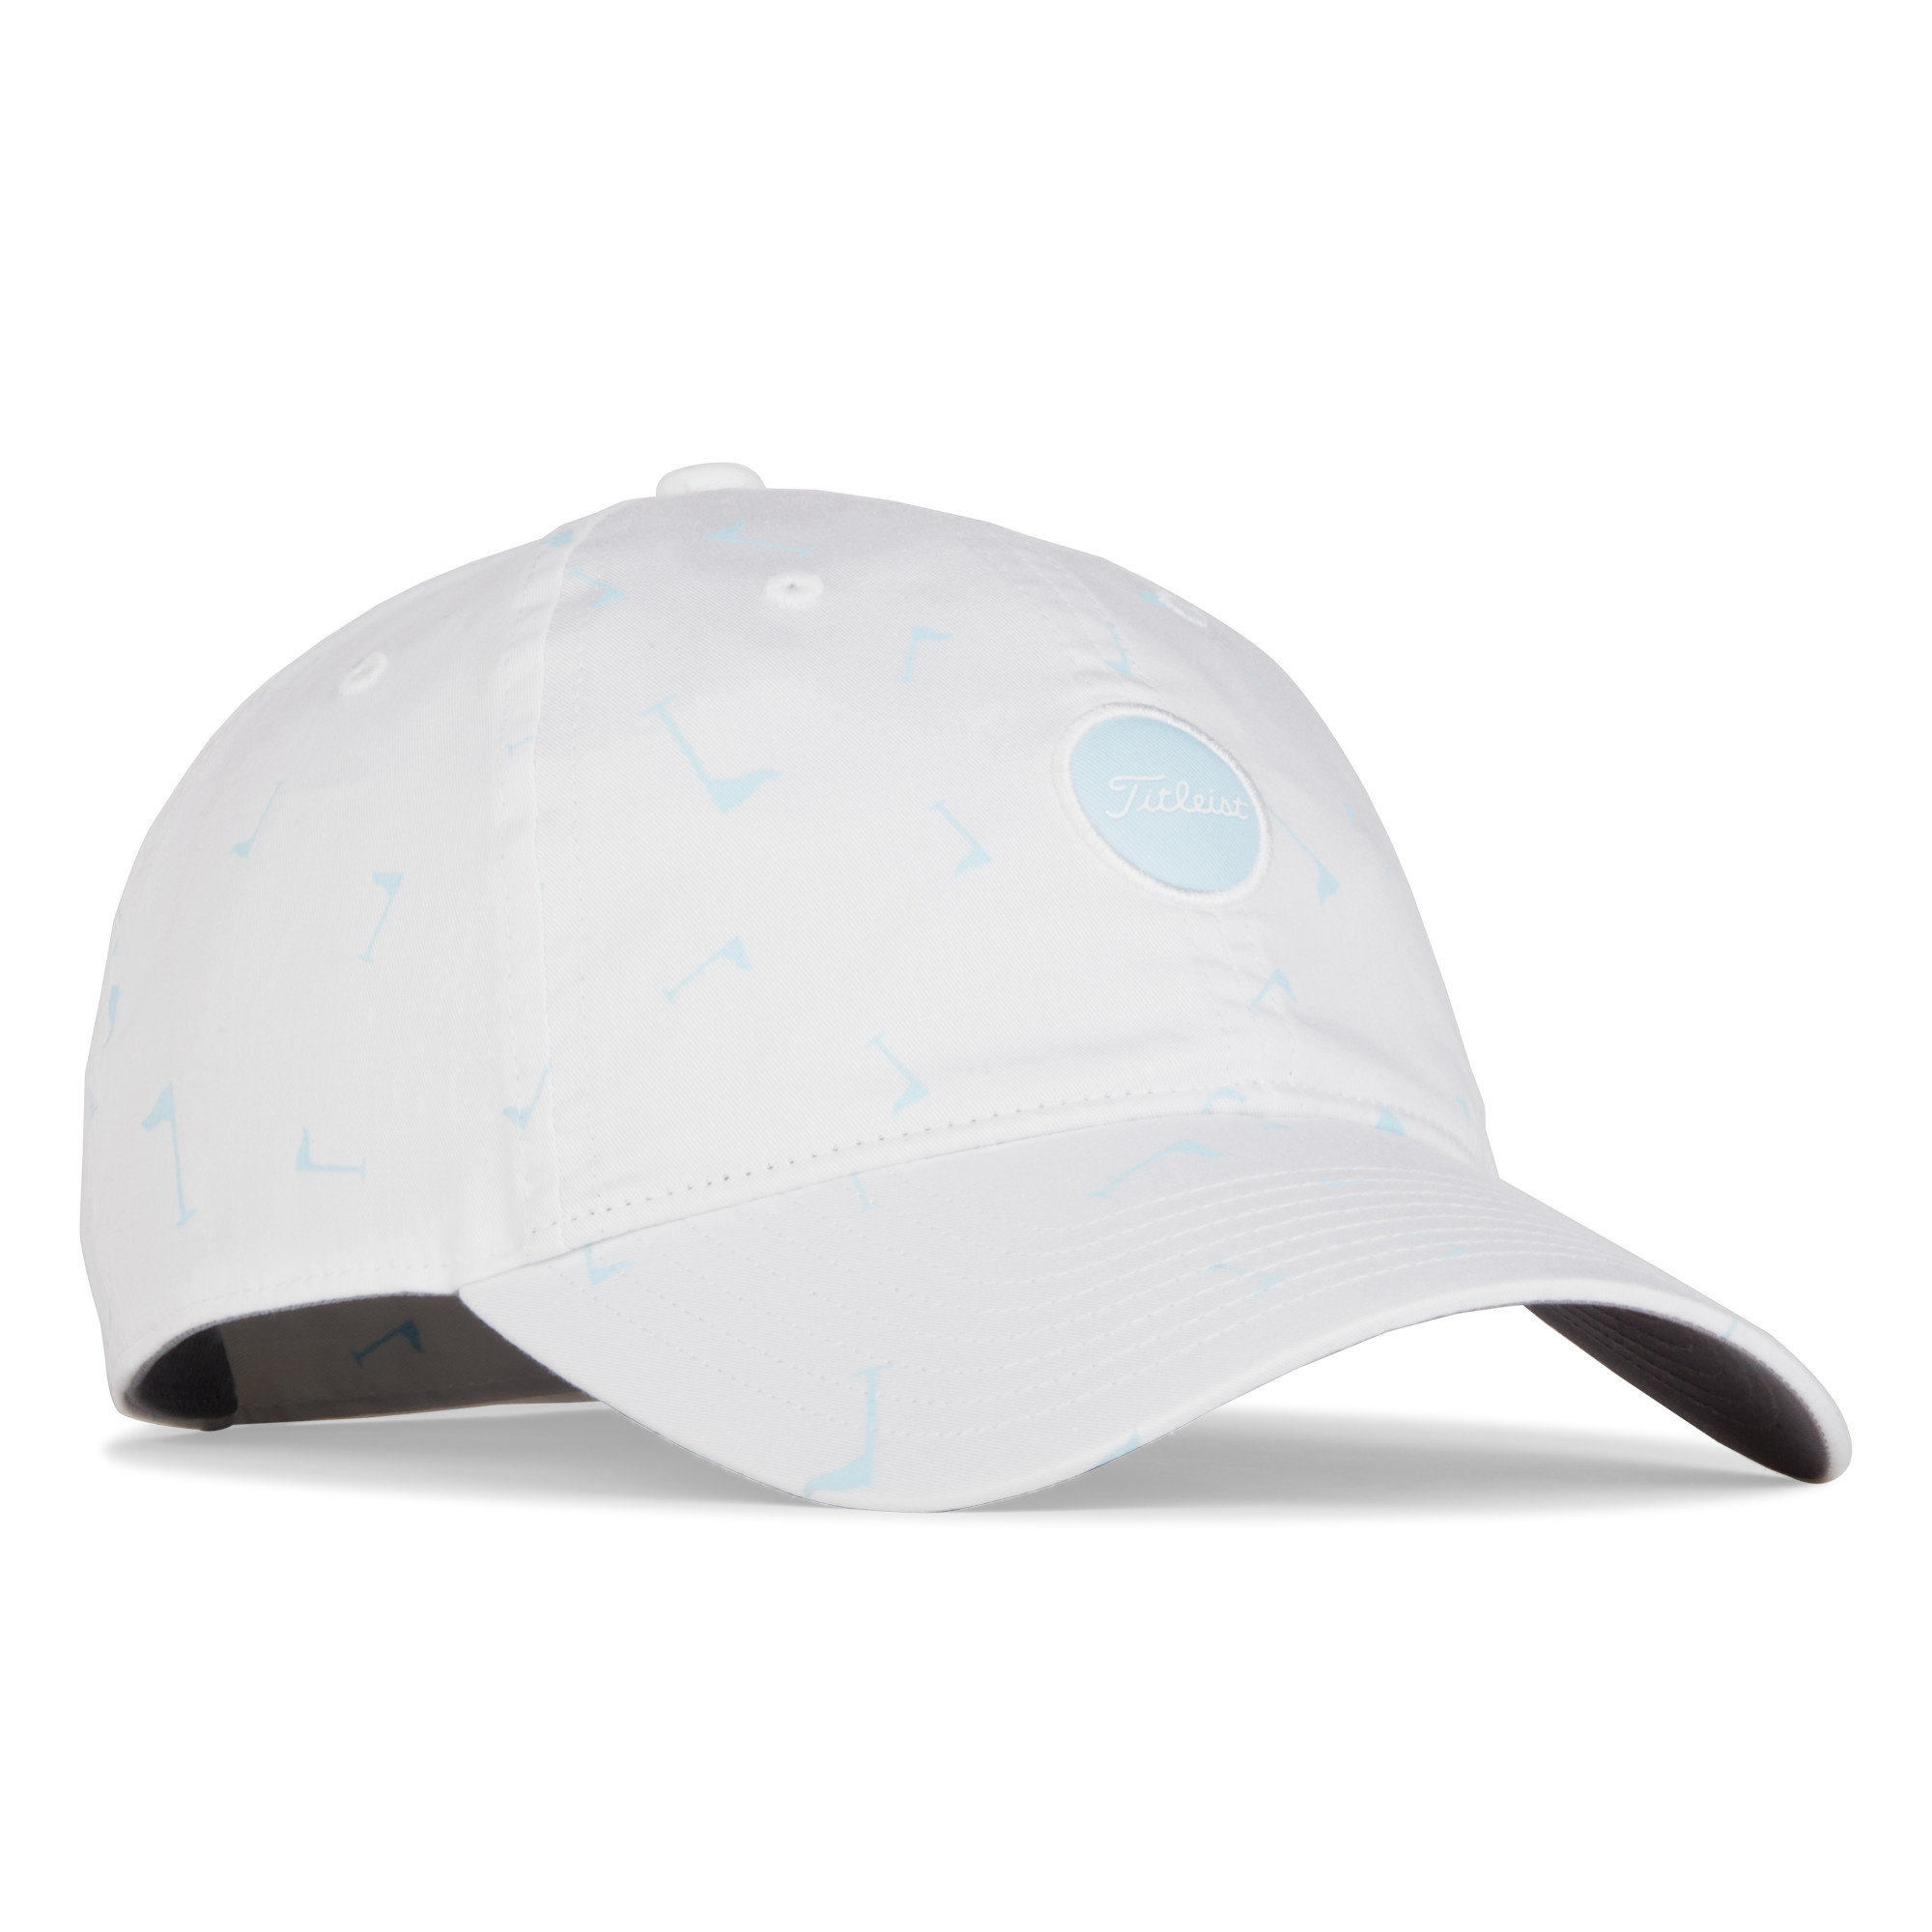 Levně Titleist Montauk Prints golfová čepice, bílá/světle modrá